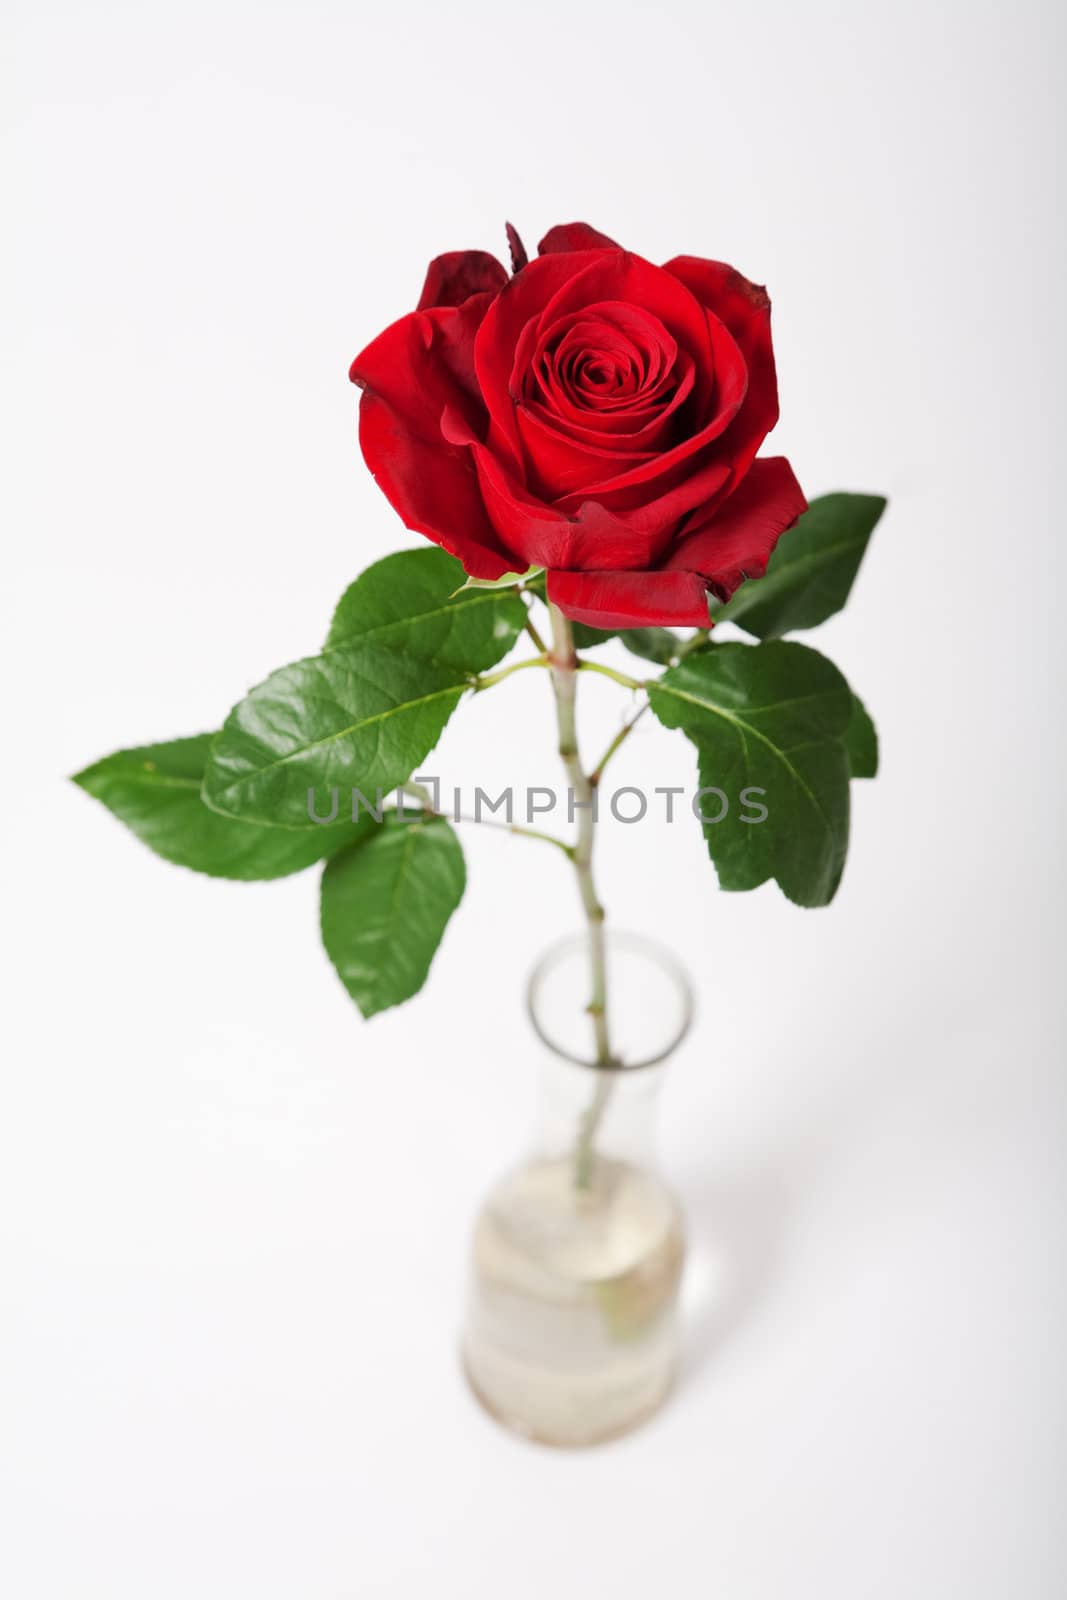 Red rose by alex_garaev